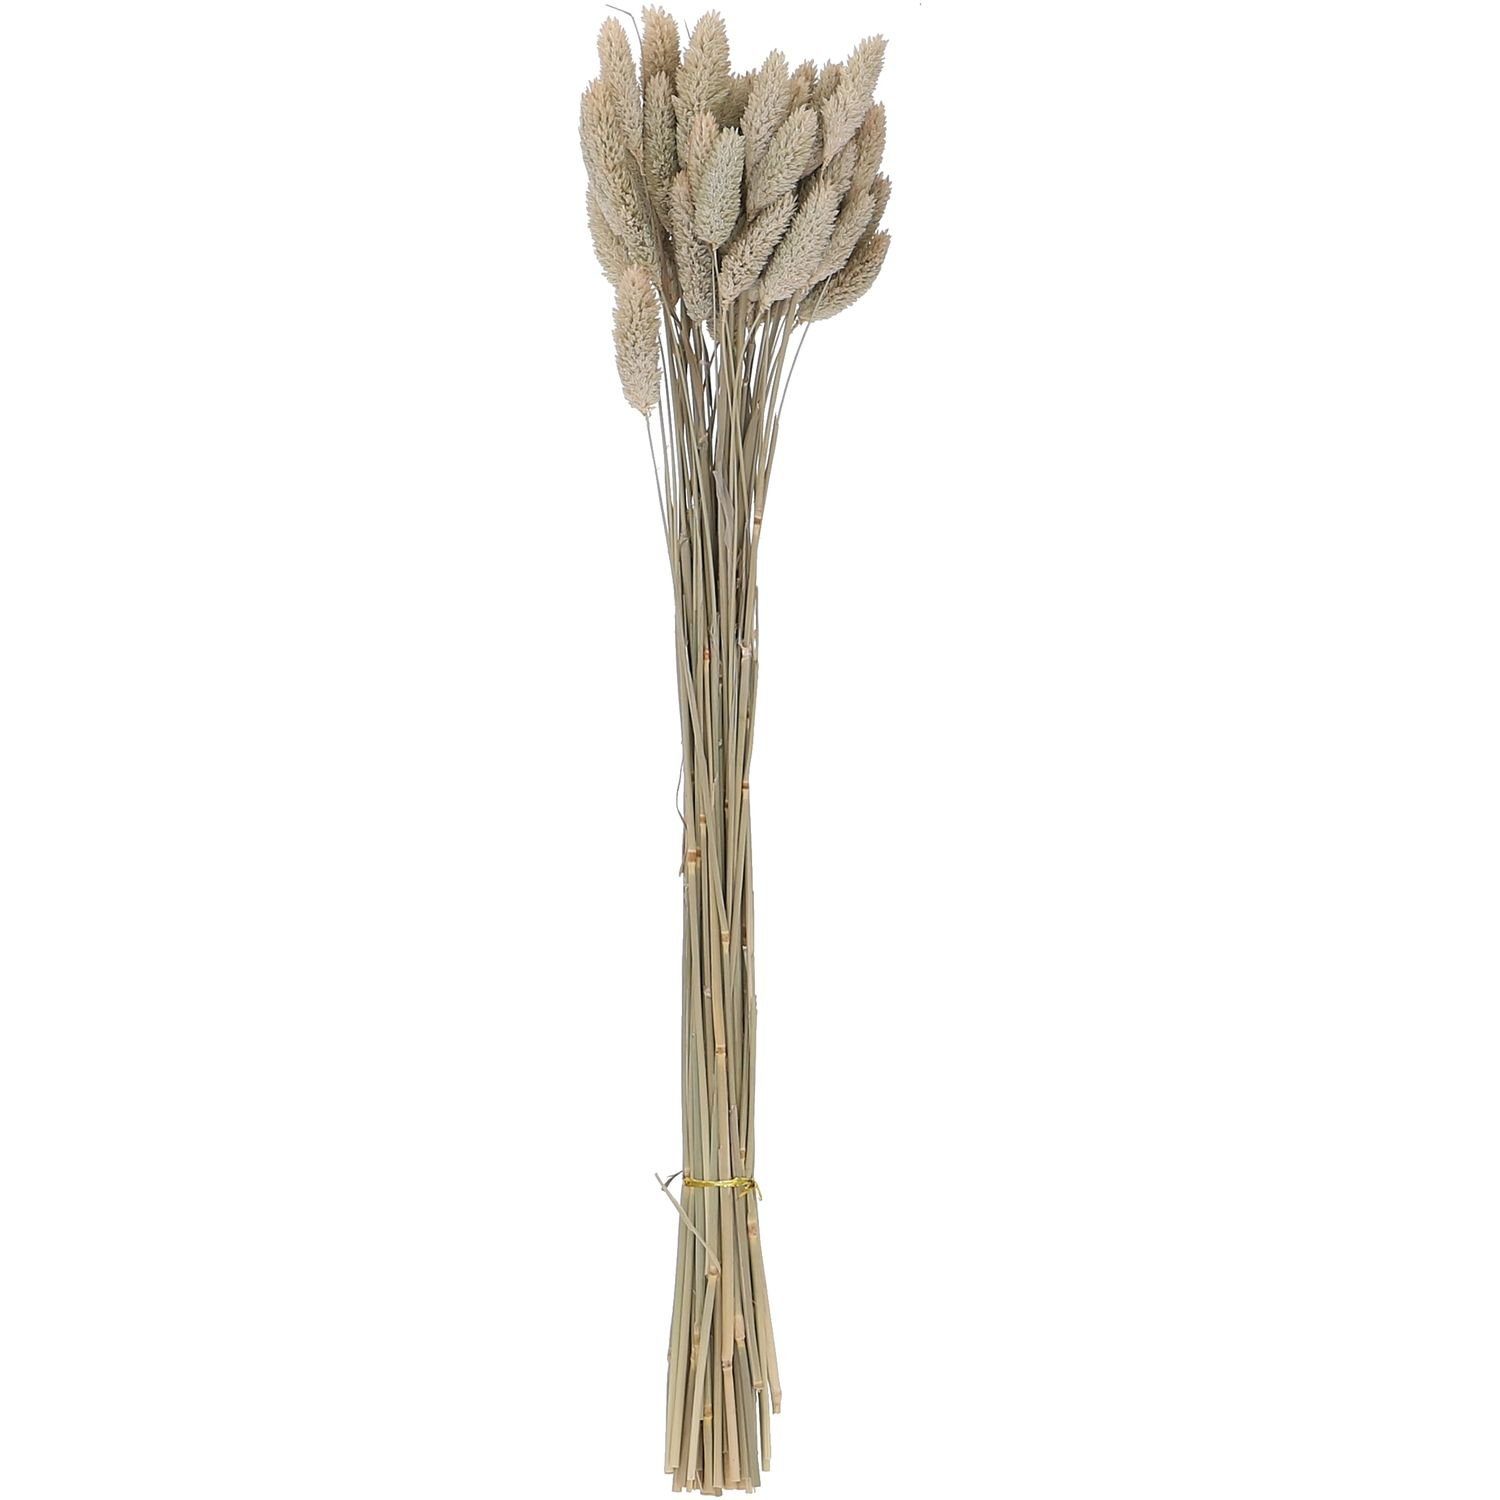 Trockenblume Phalaris - Bund/50 Stück - Länge ca. 60-70 cm - natur, Vosteen